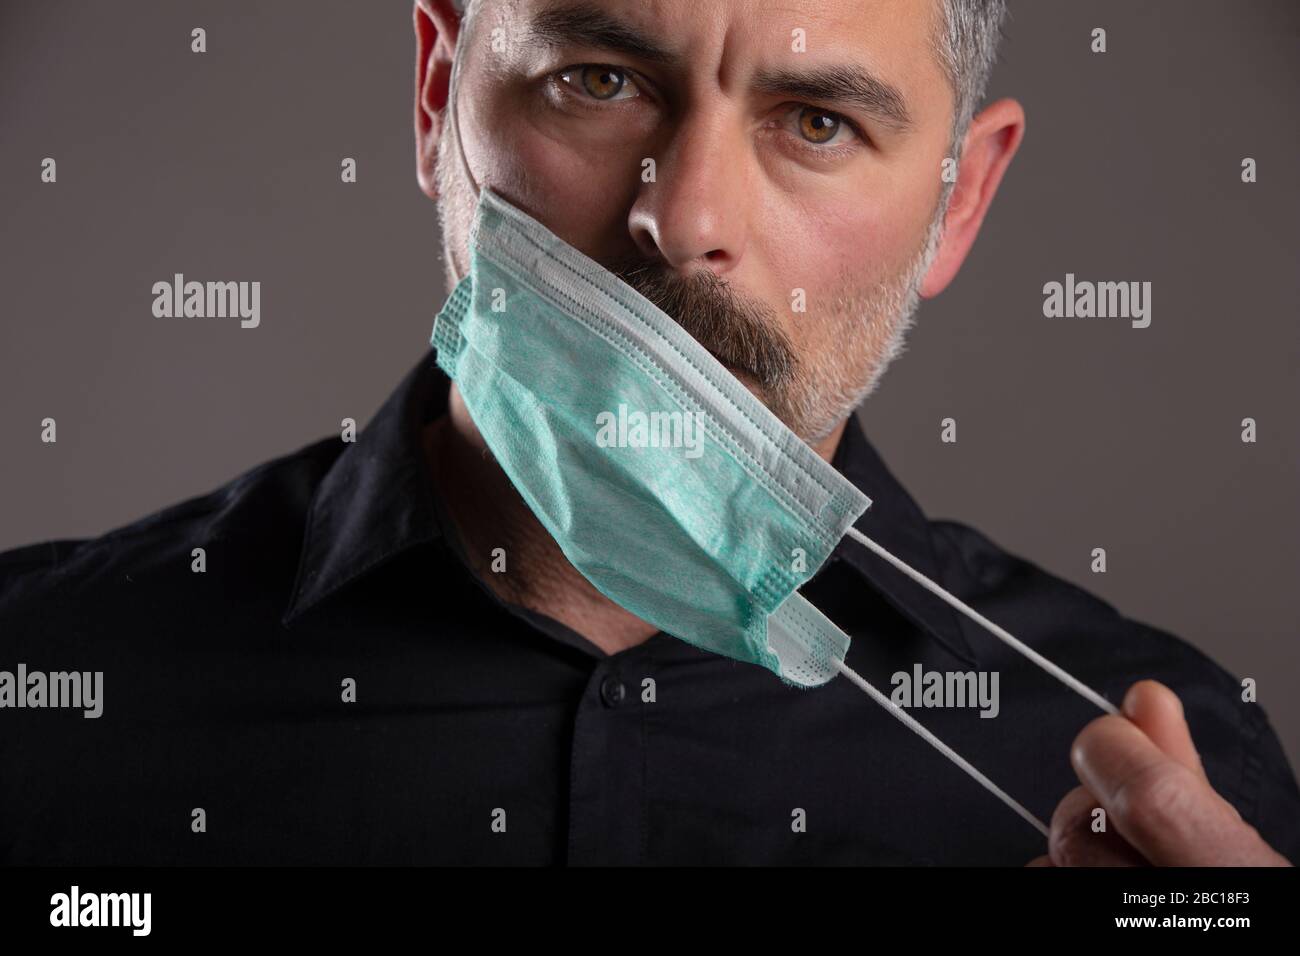 Ritratto di atteggiamento serio uomo togliere maschera di protezione medica su sfondo grigio studio. Concetto di responsabilità personale durante la quarantena. Foto Stock